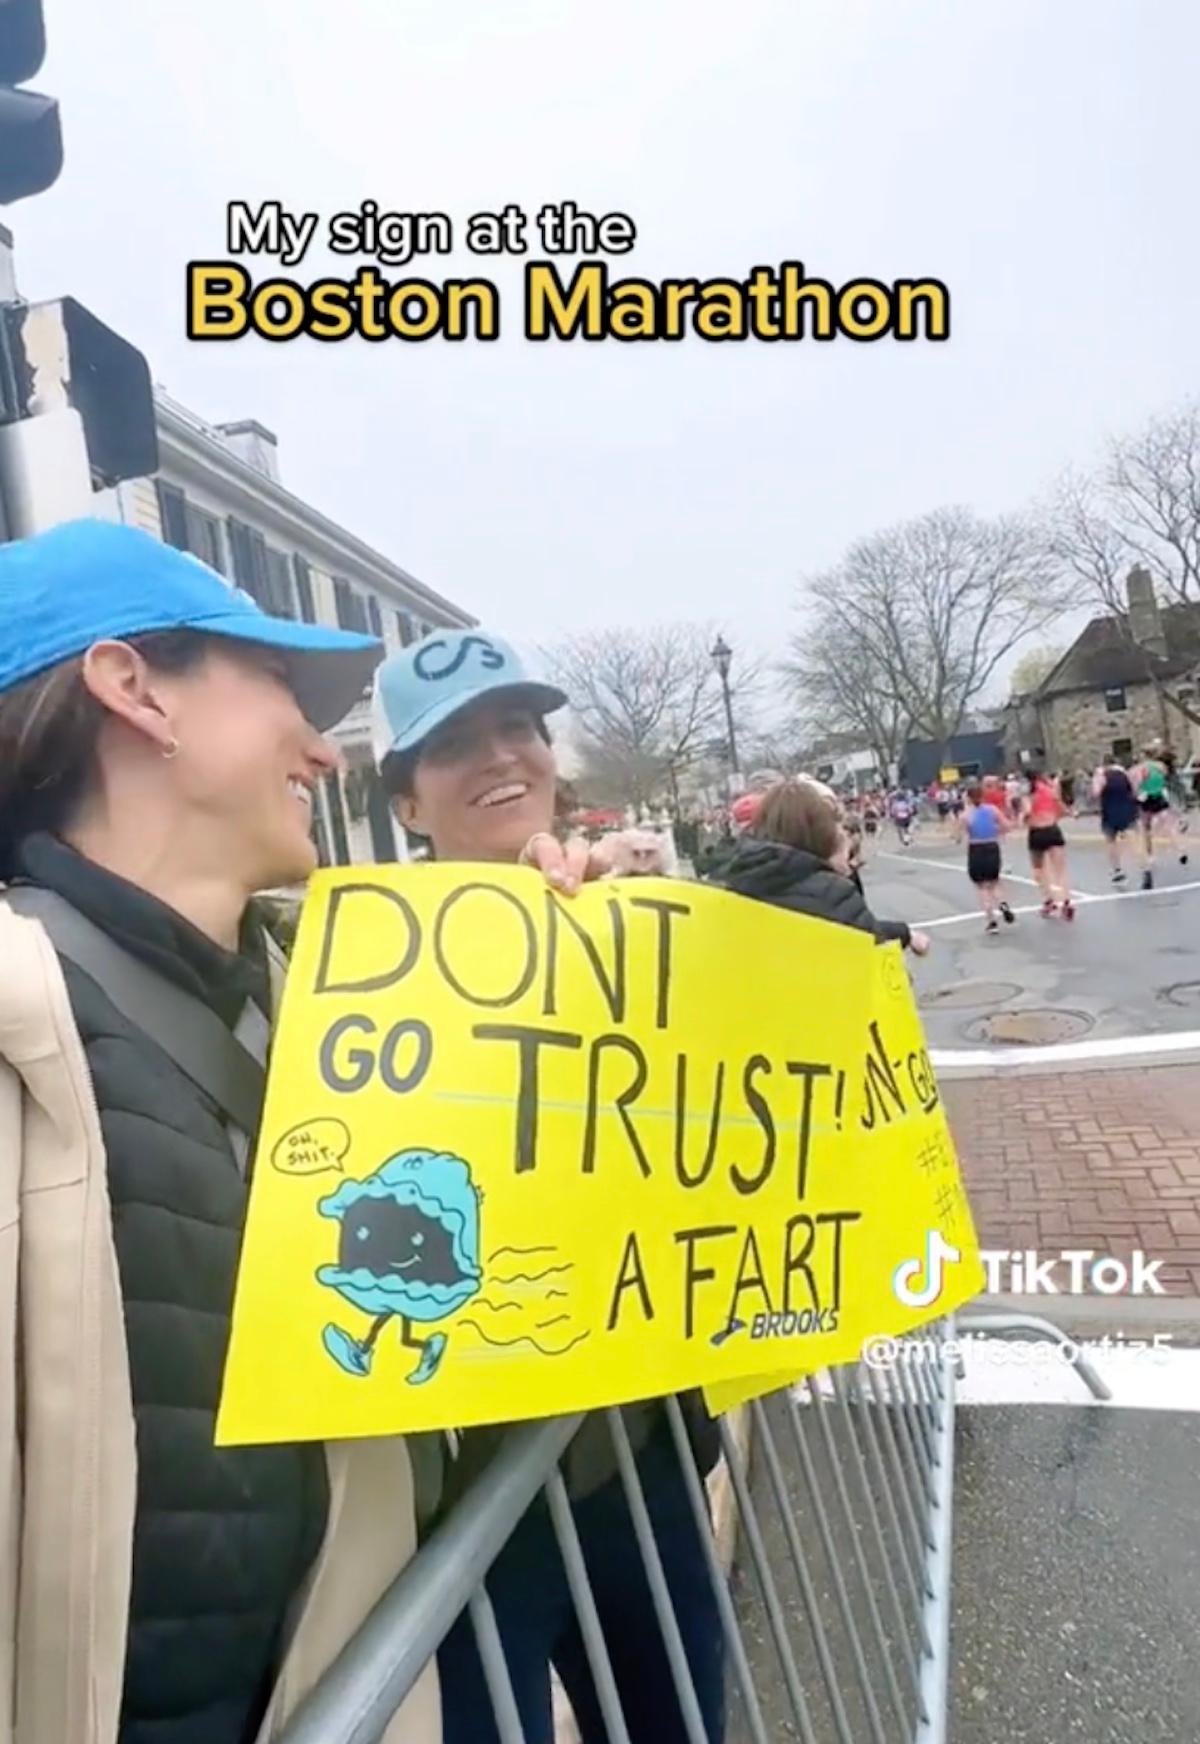 Una mujer con un cartel que dice "No te fíes de un pedo" en un maratón